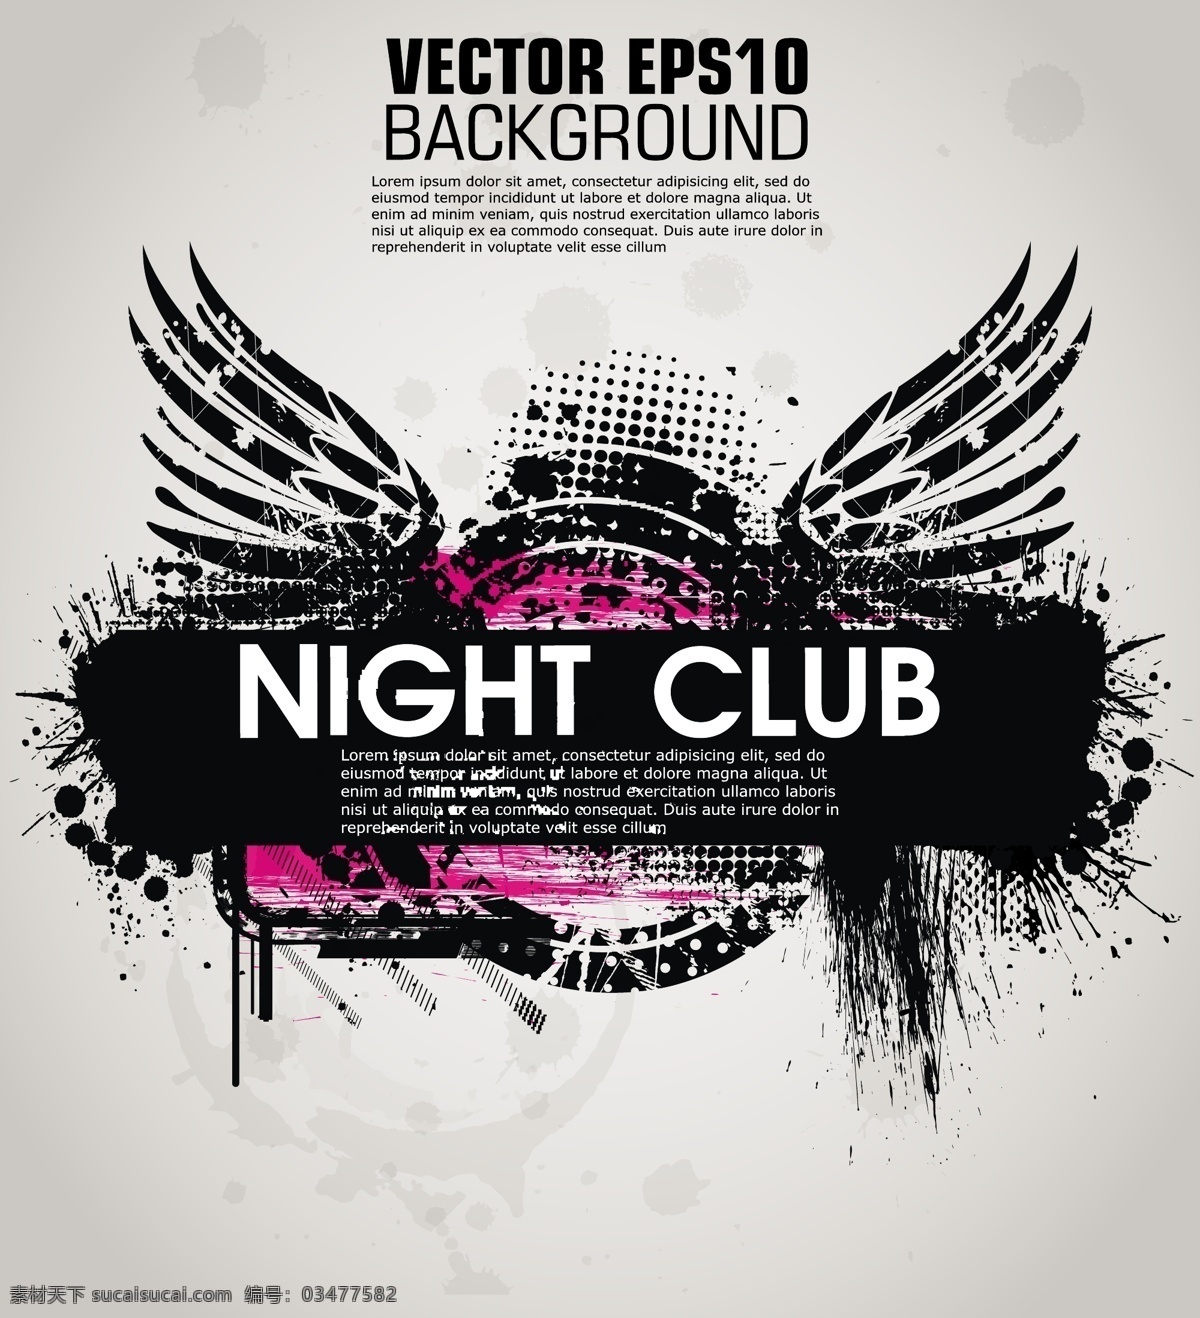 俱乐部海报 背景 黑色 市俱乐部 音乐 人群 舞蹈 跳舞的人 迪厅 舞厅灯光 事件 节日 传单 音乐背景